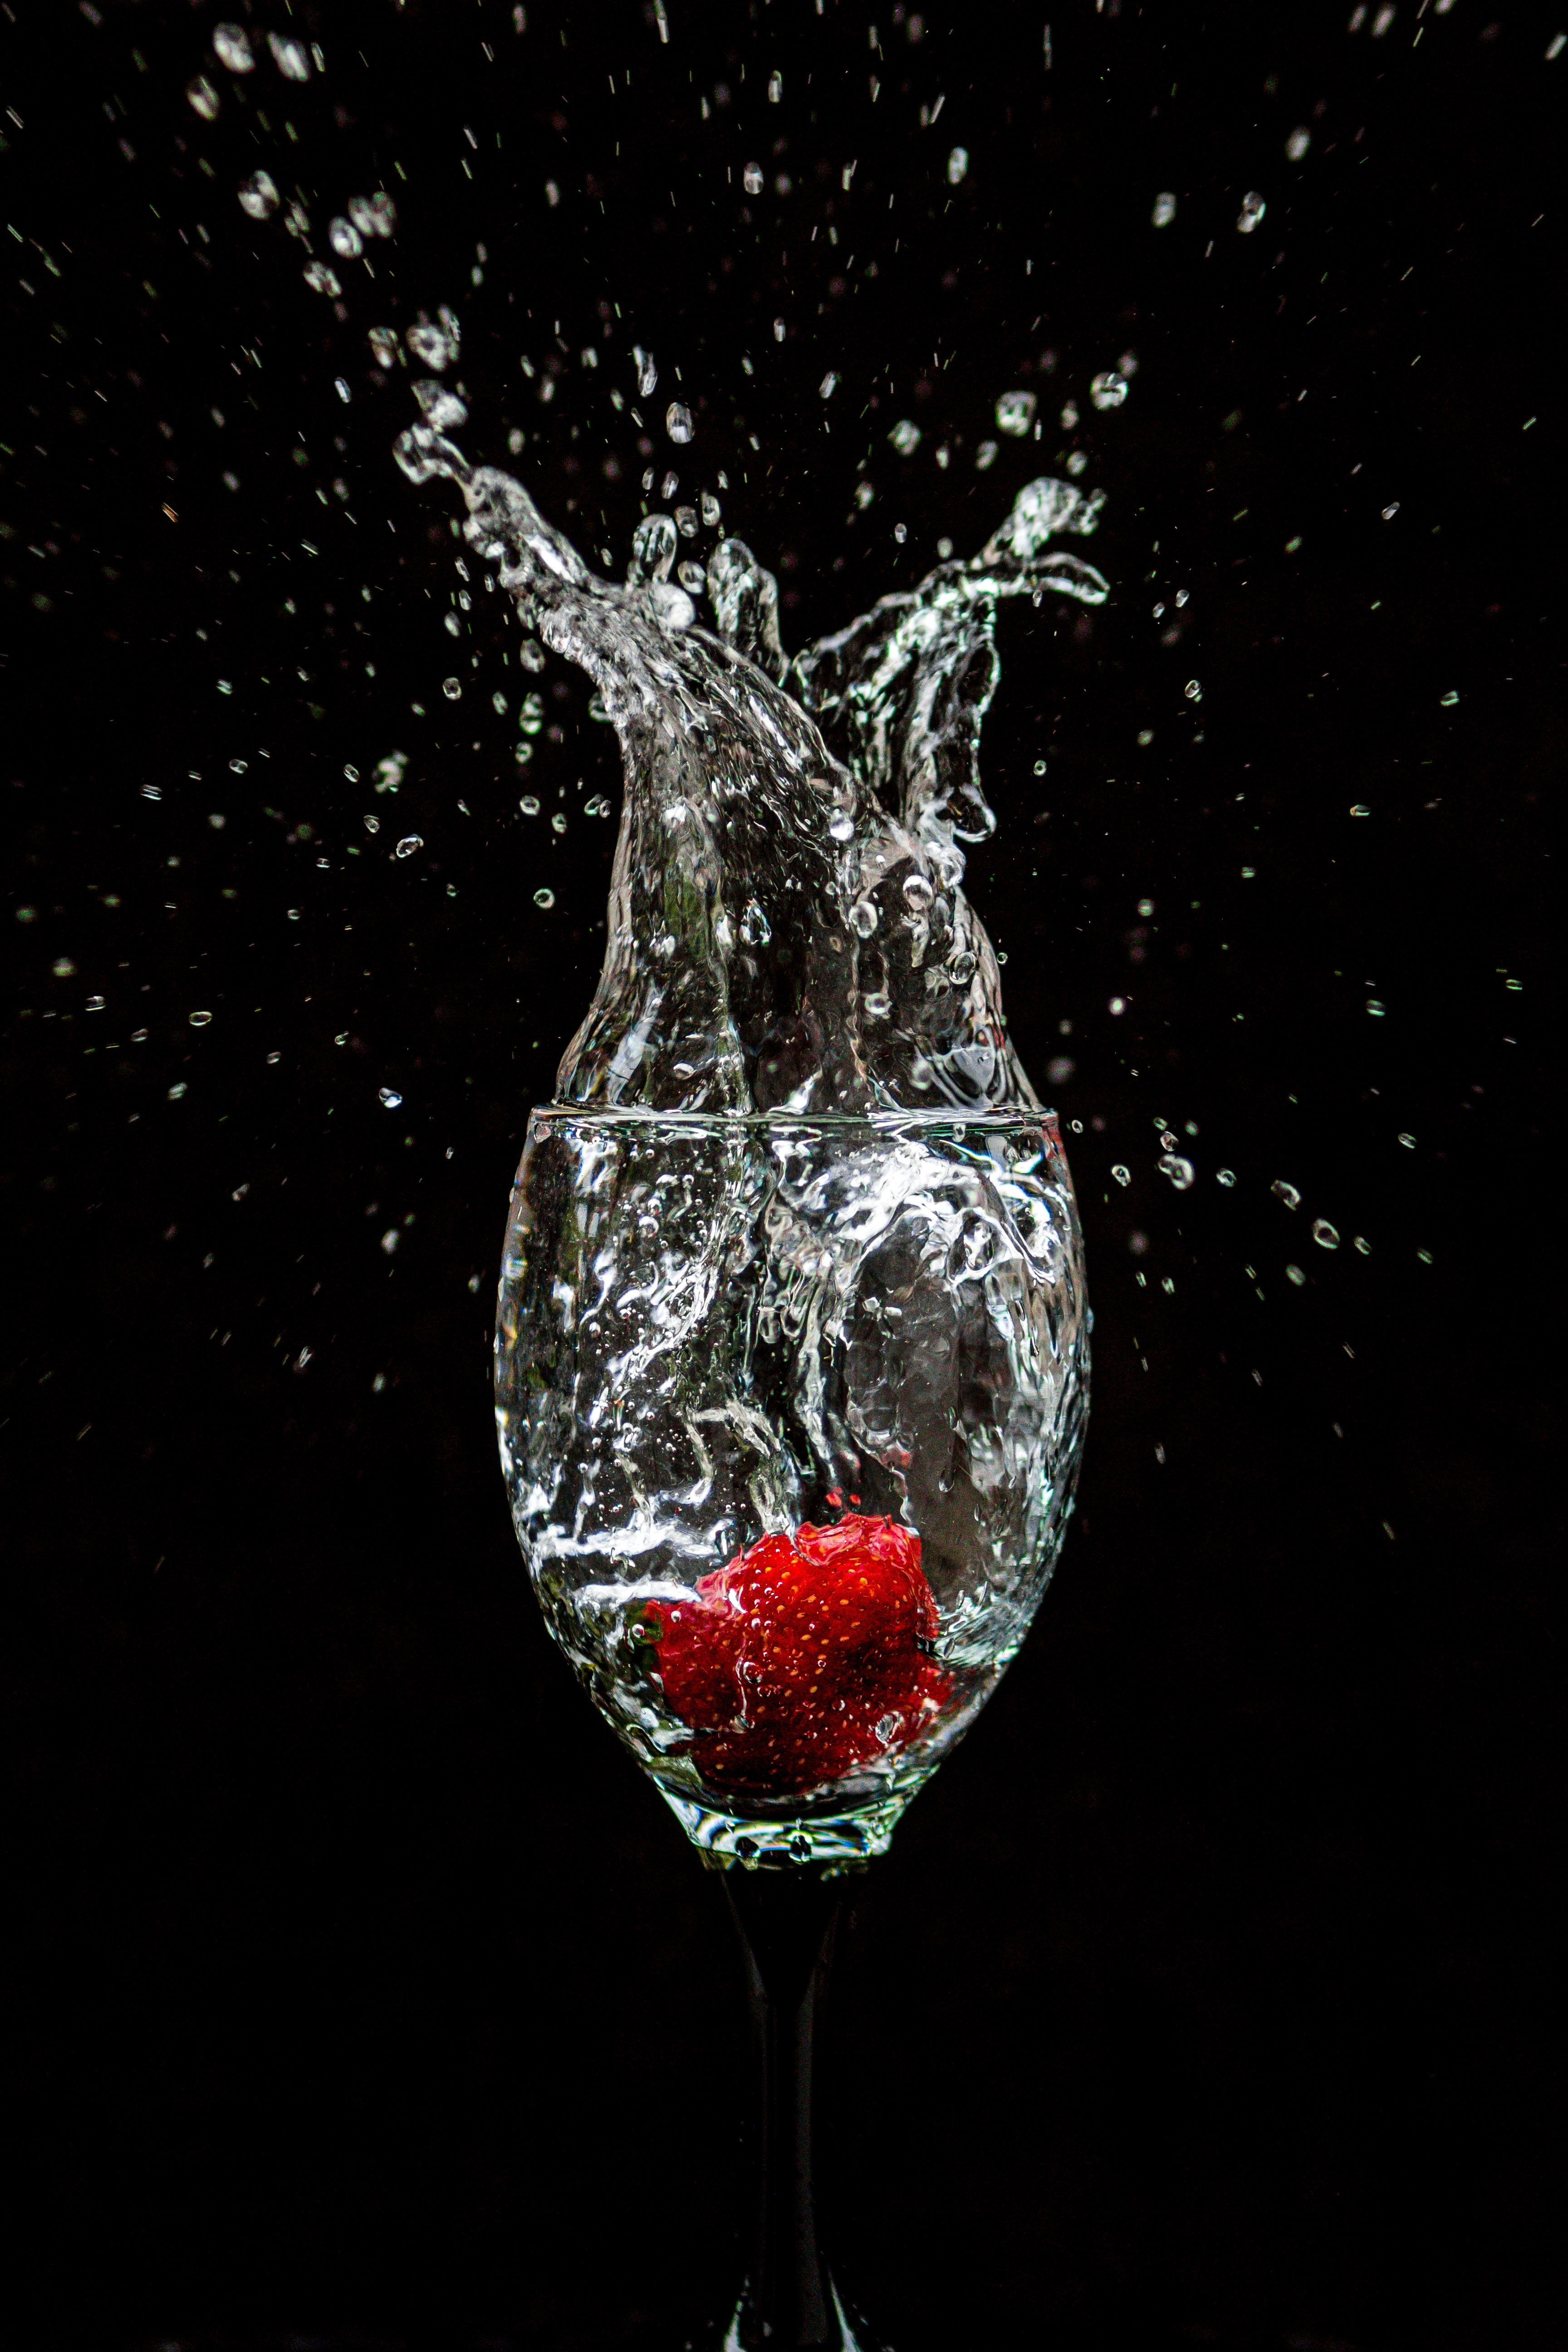 strawberry, splash, wineglass, black, goblet 5K